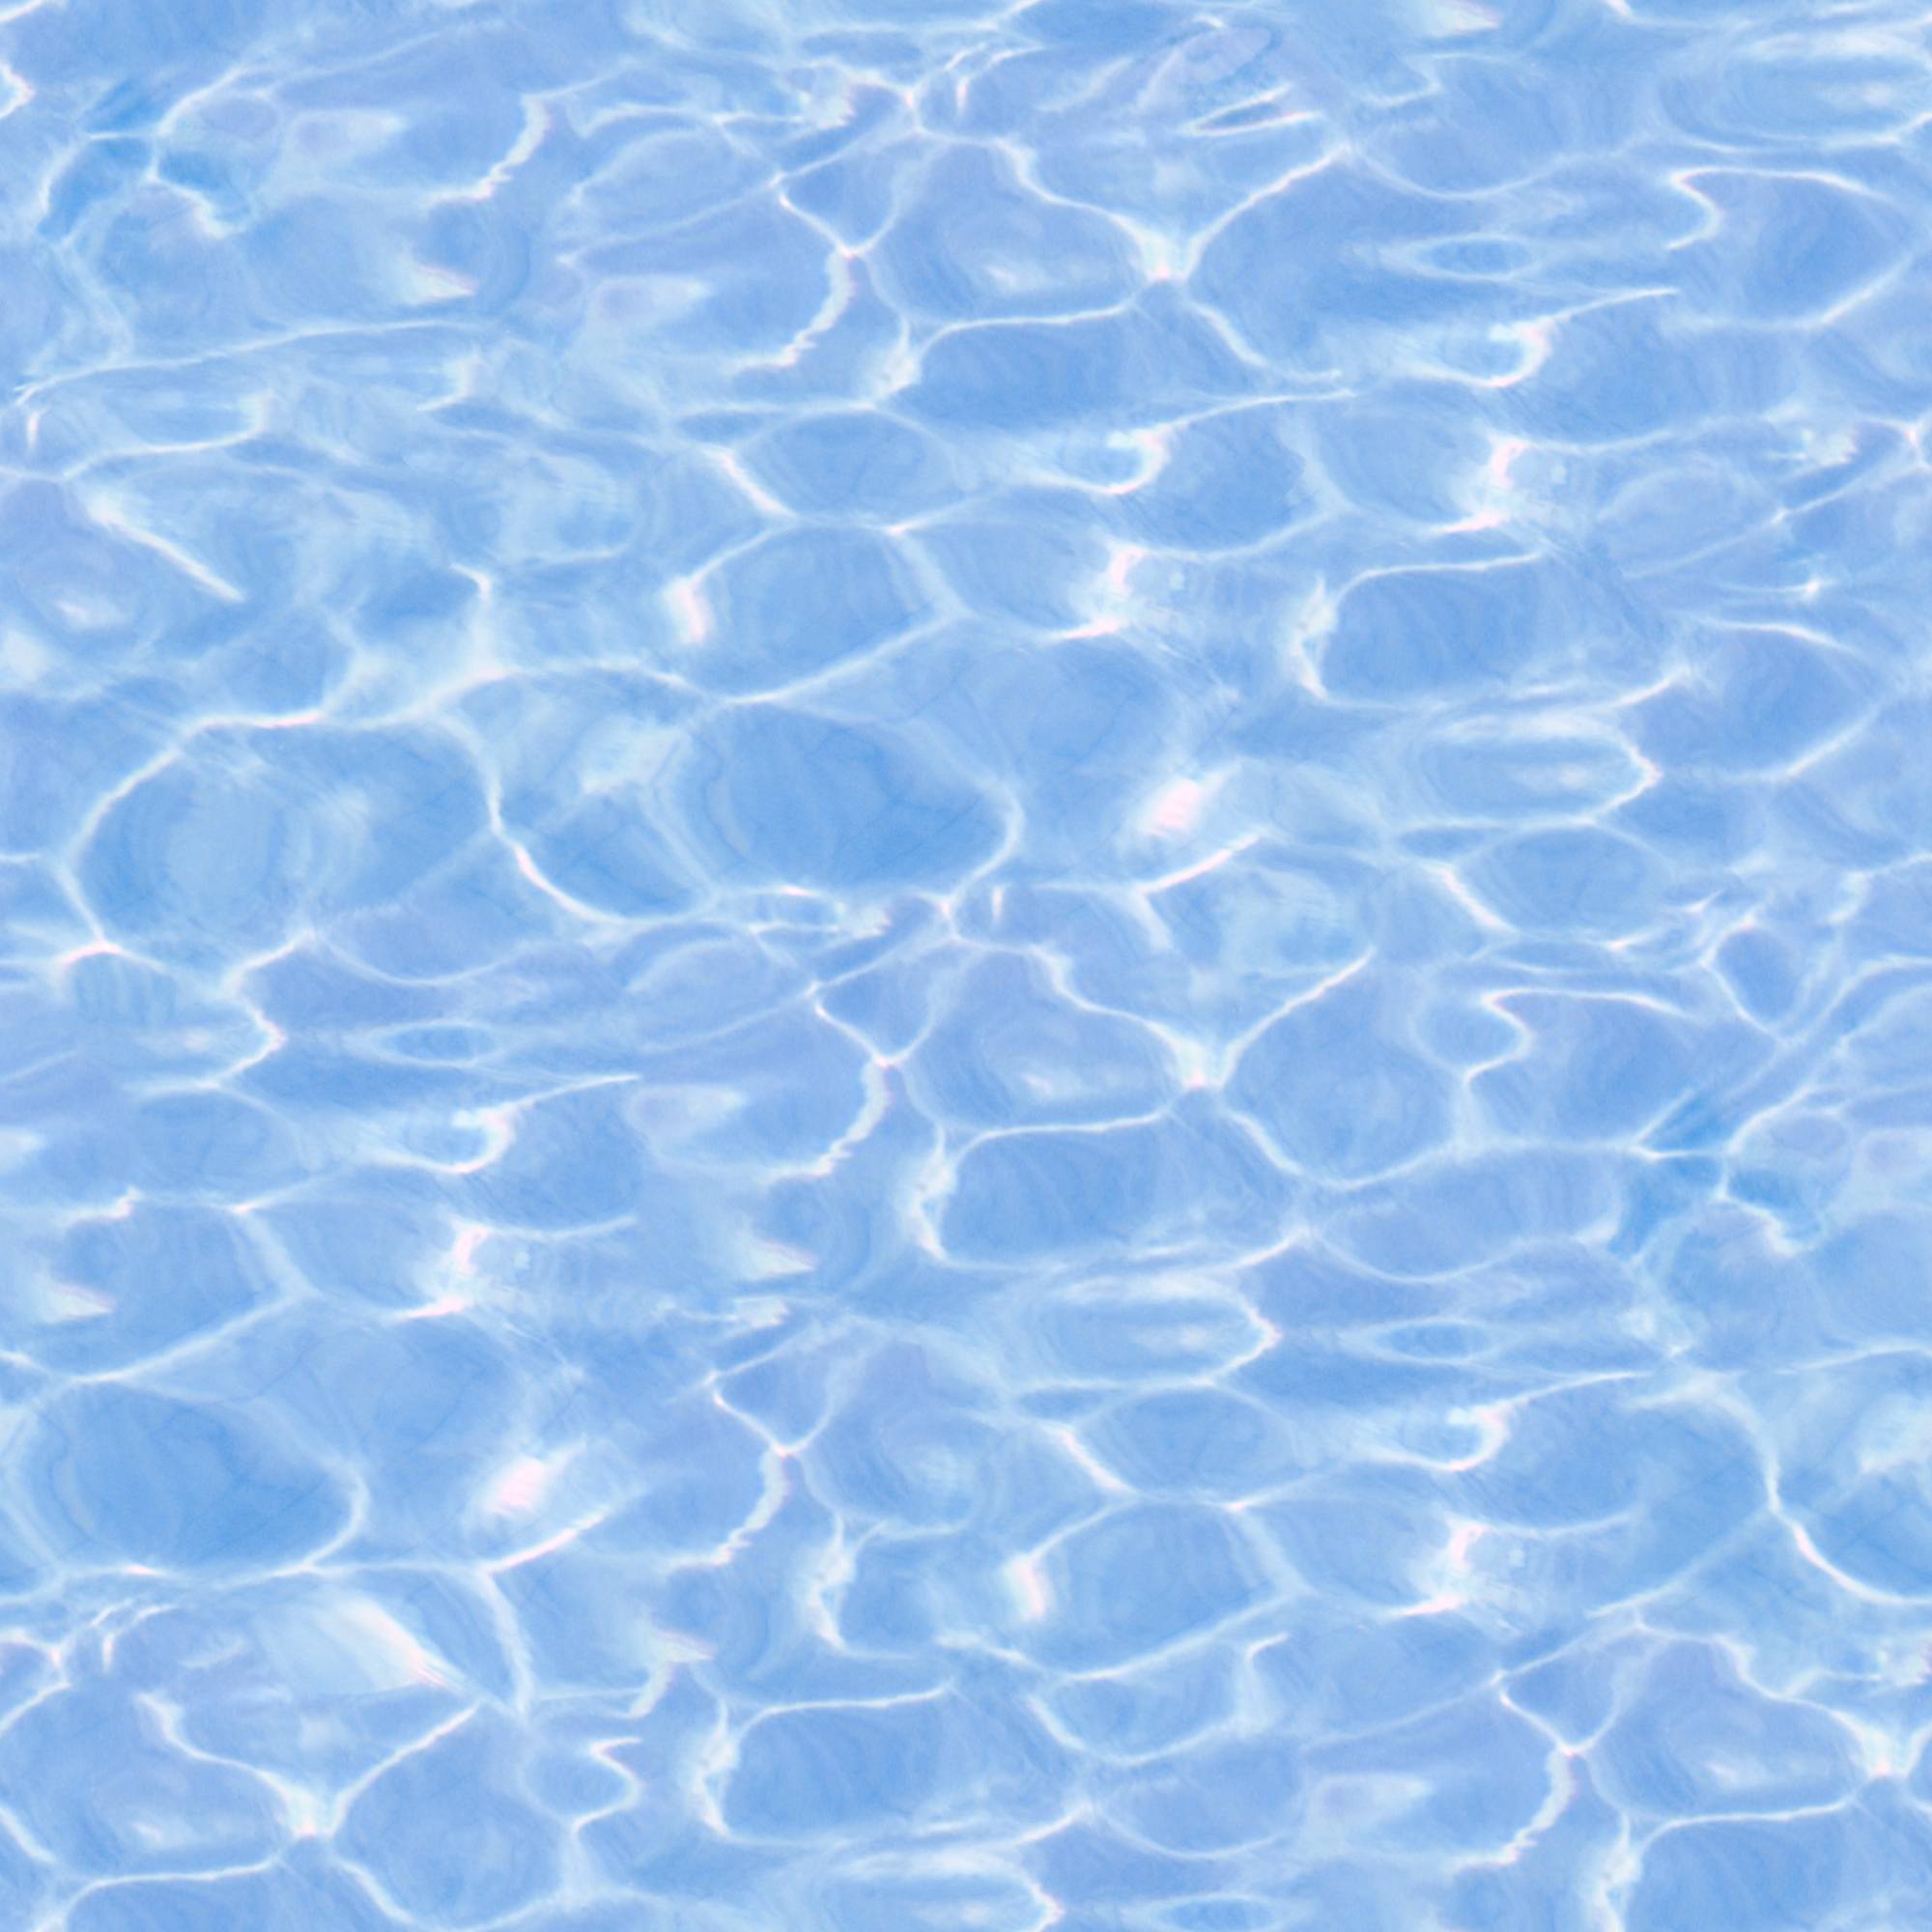 8_pool water texture_seamless_hr.jpg